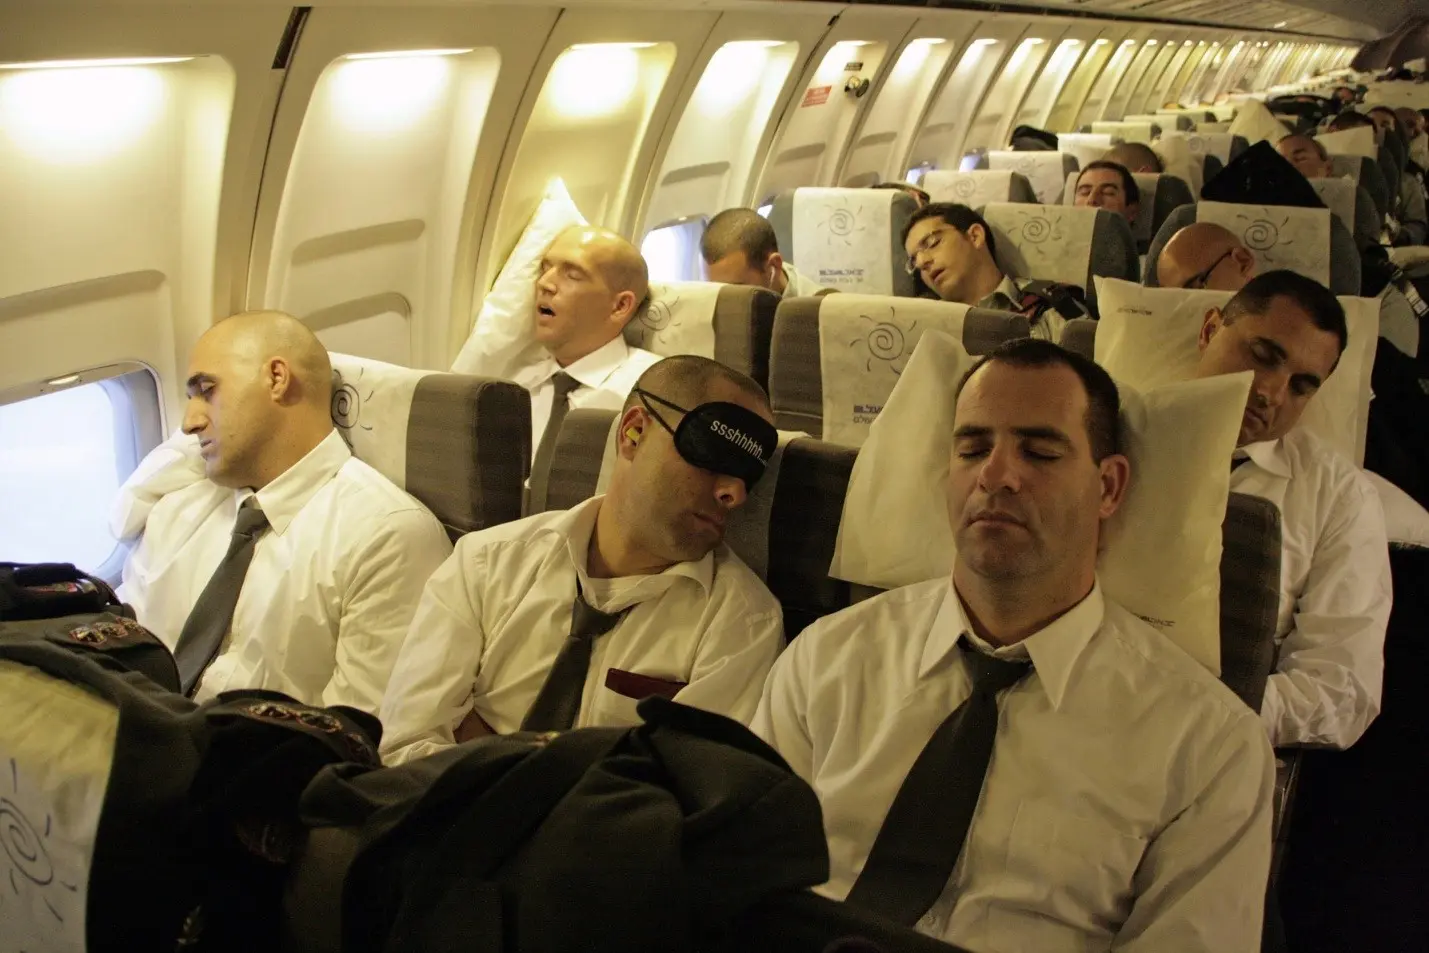 با این راهکارها خواب راحت‌تری در هواپیما دارید